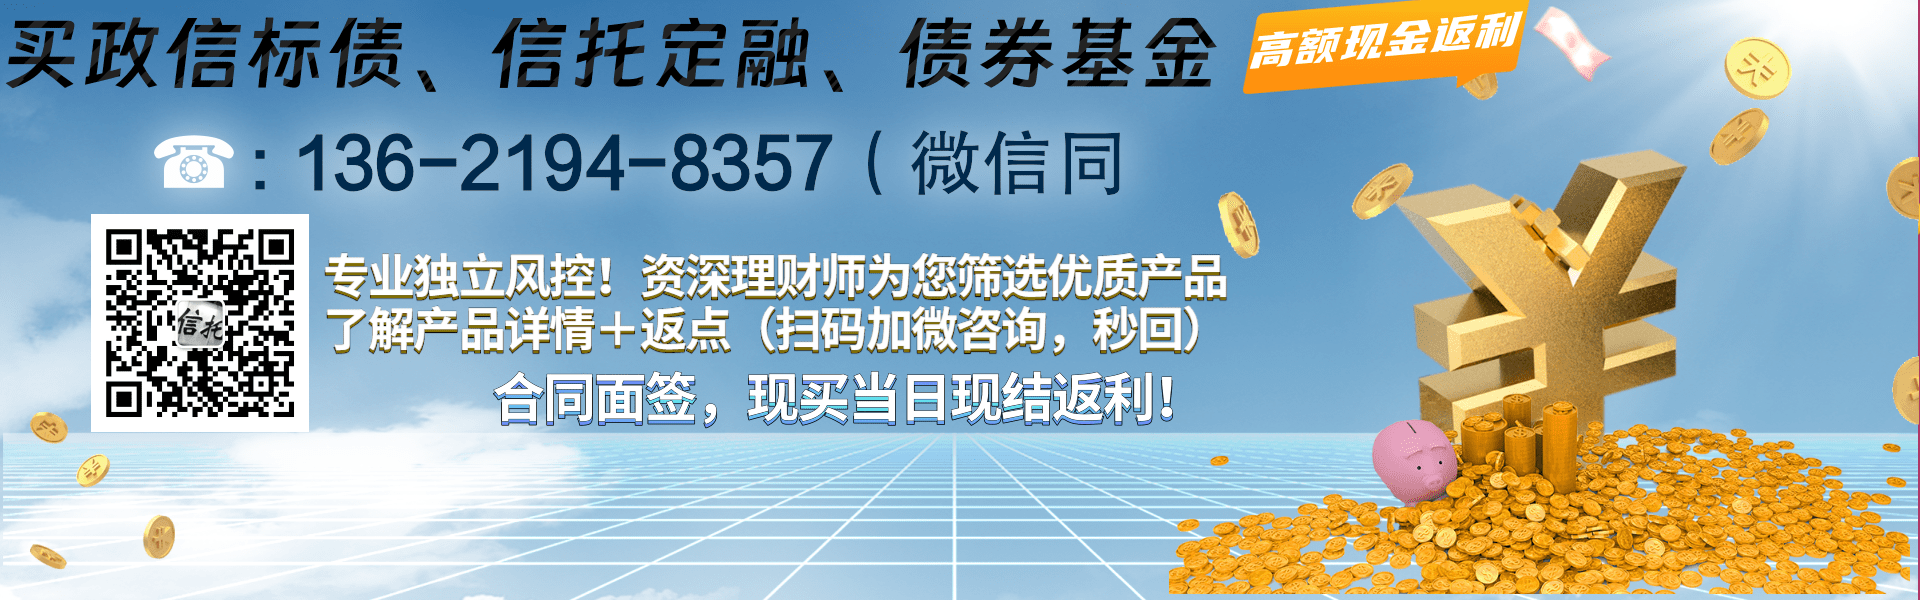 金堂县现代农业投资资产债权收益权